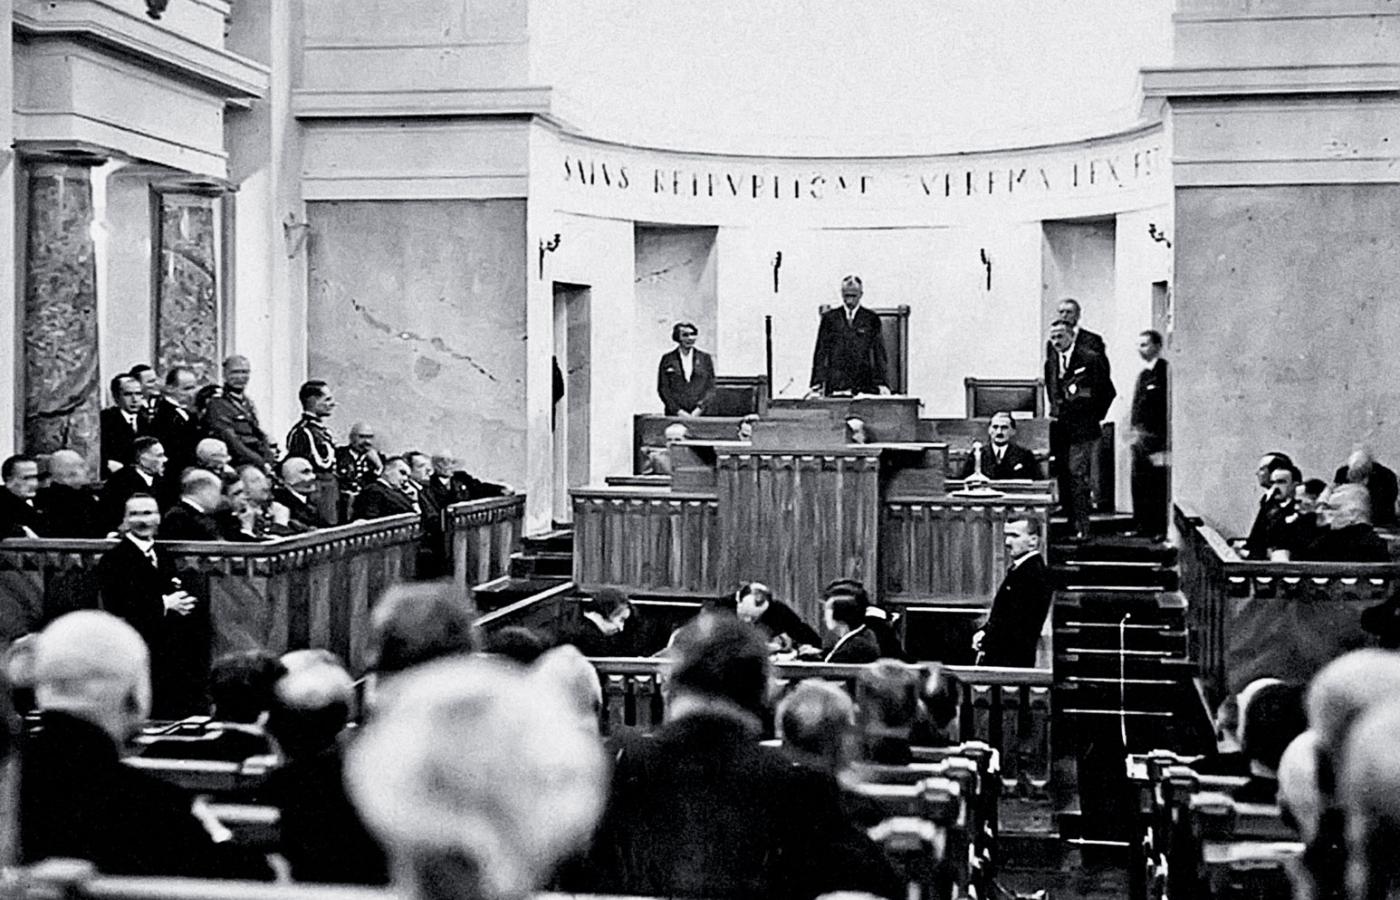 Inauguracyjne posiedzenie senatu III kadencji, 9 grudnia 1930 r. Na fot. m.in. senator Hanna Hubicka i marszałek senatu Władysław Raczkiewicz.